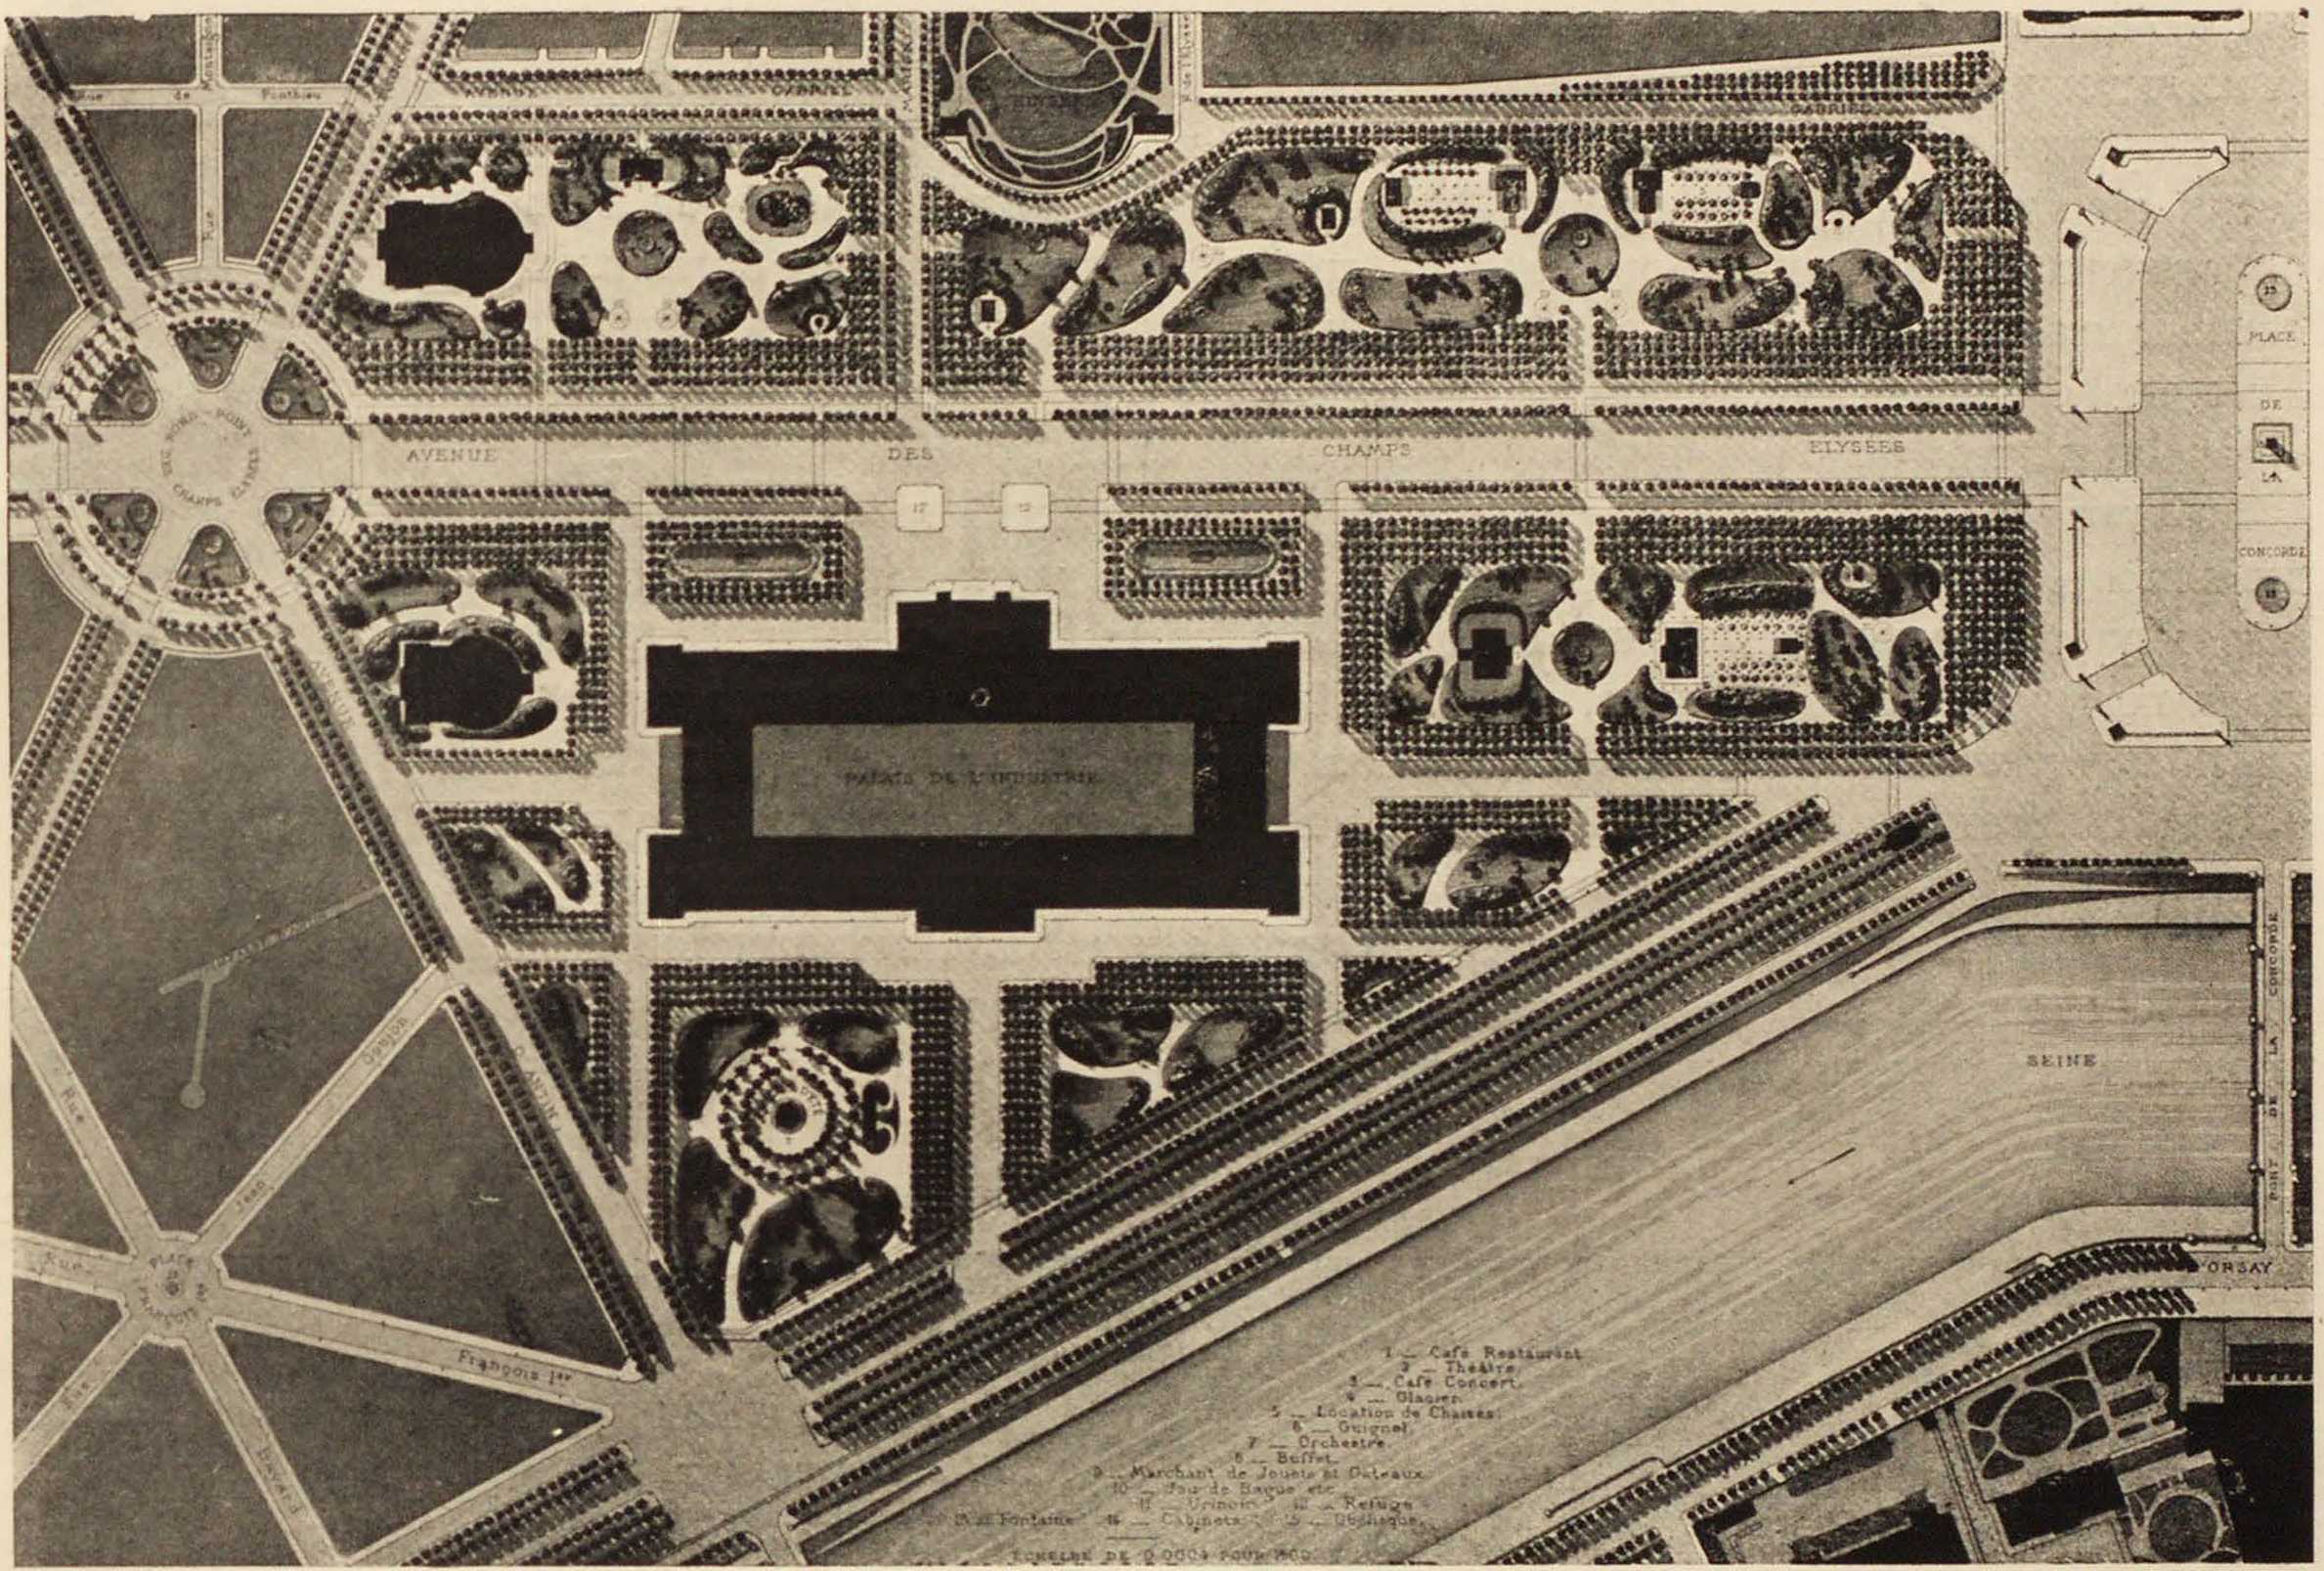 Планировка Елисейских полей и прилегающего района в период работ Оссмана. Aménagement du quartier des Champs Élysées en 1855